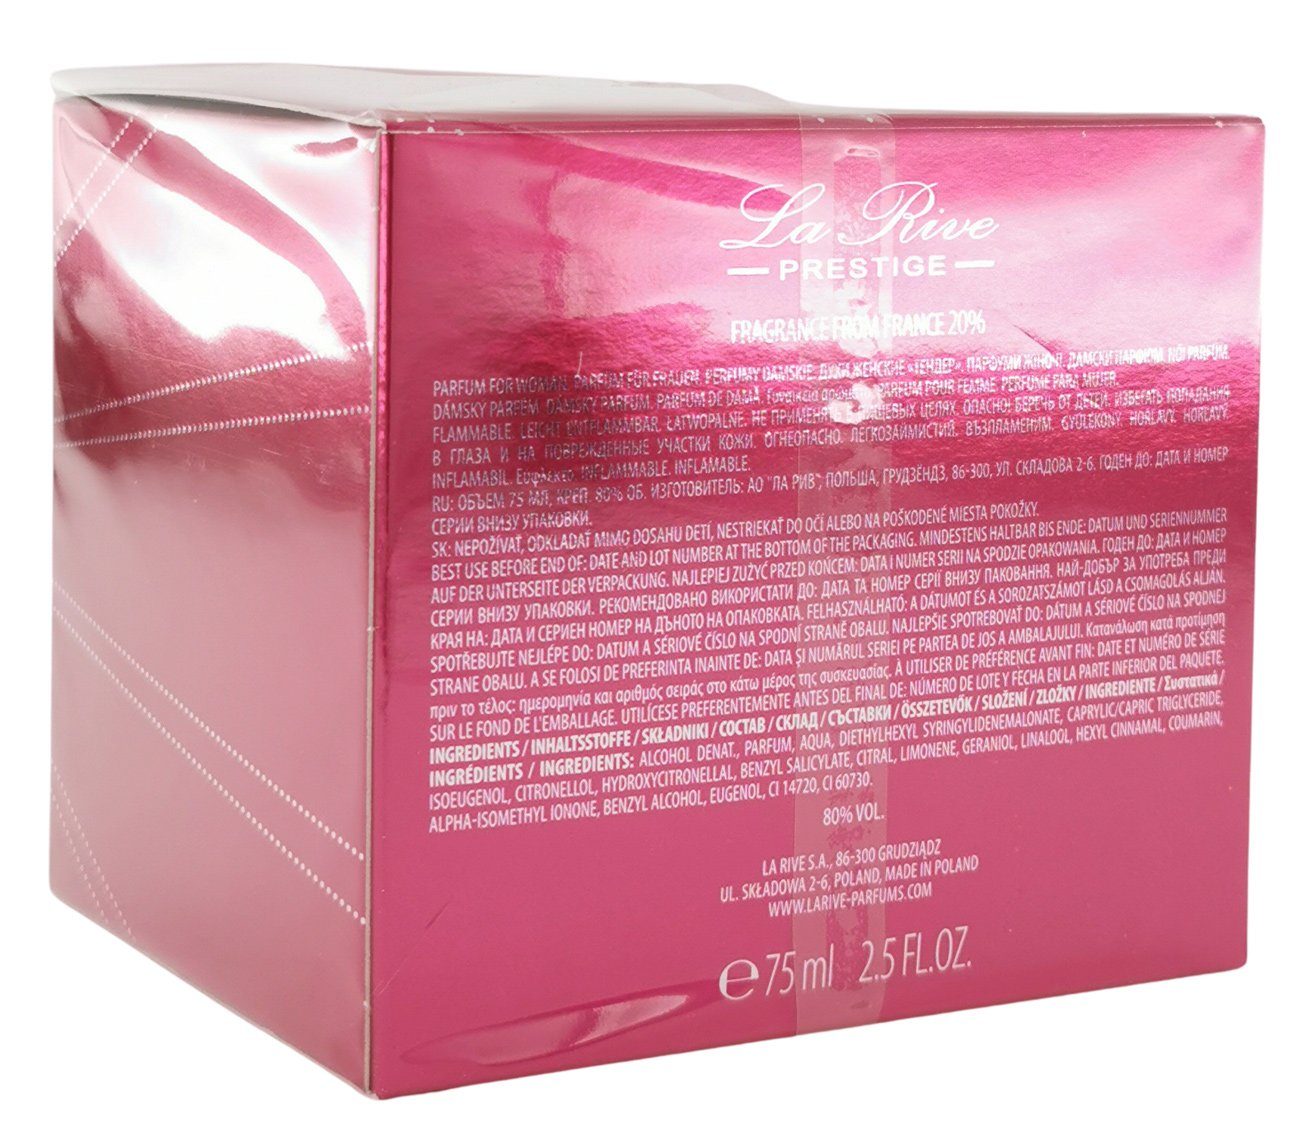 La Rive Eau RIVE - de LA ml - Parfum 75 Prestige Parfum Tender